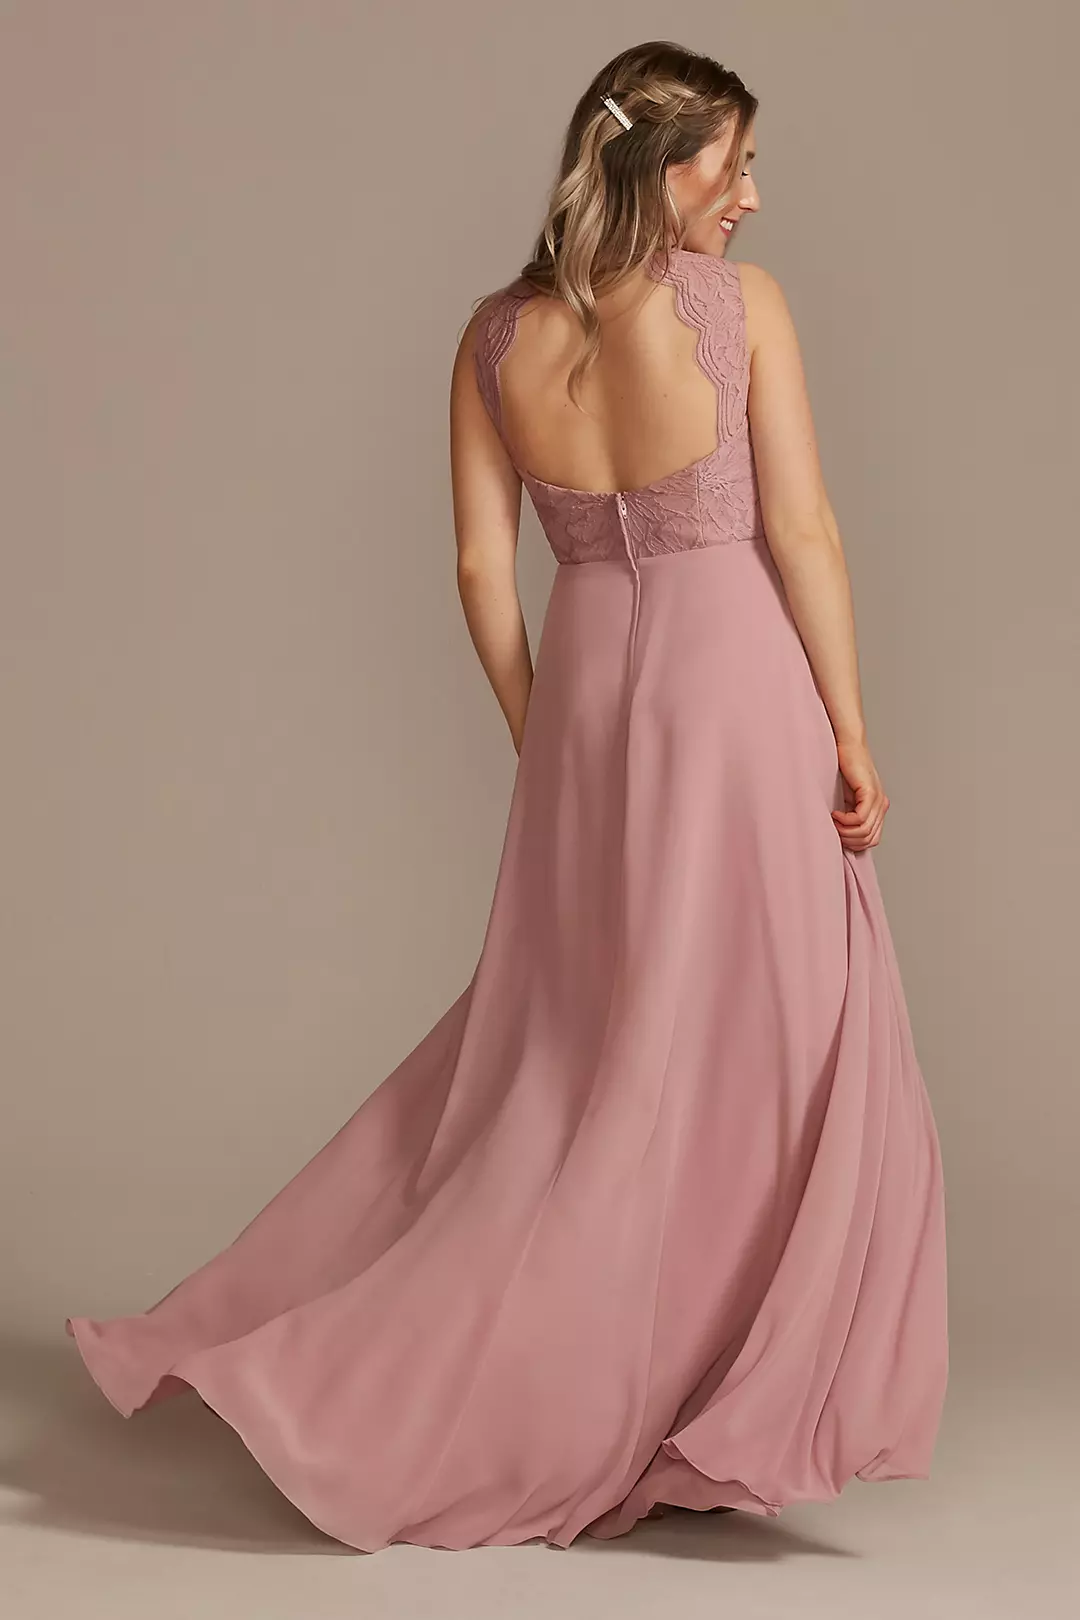 Lace Chiffon Tank Long Bridesmaid Dress Image 3